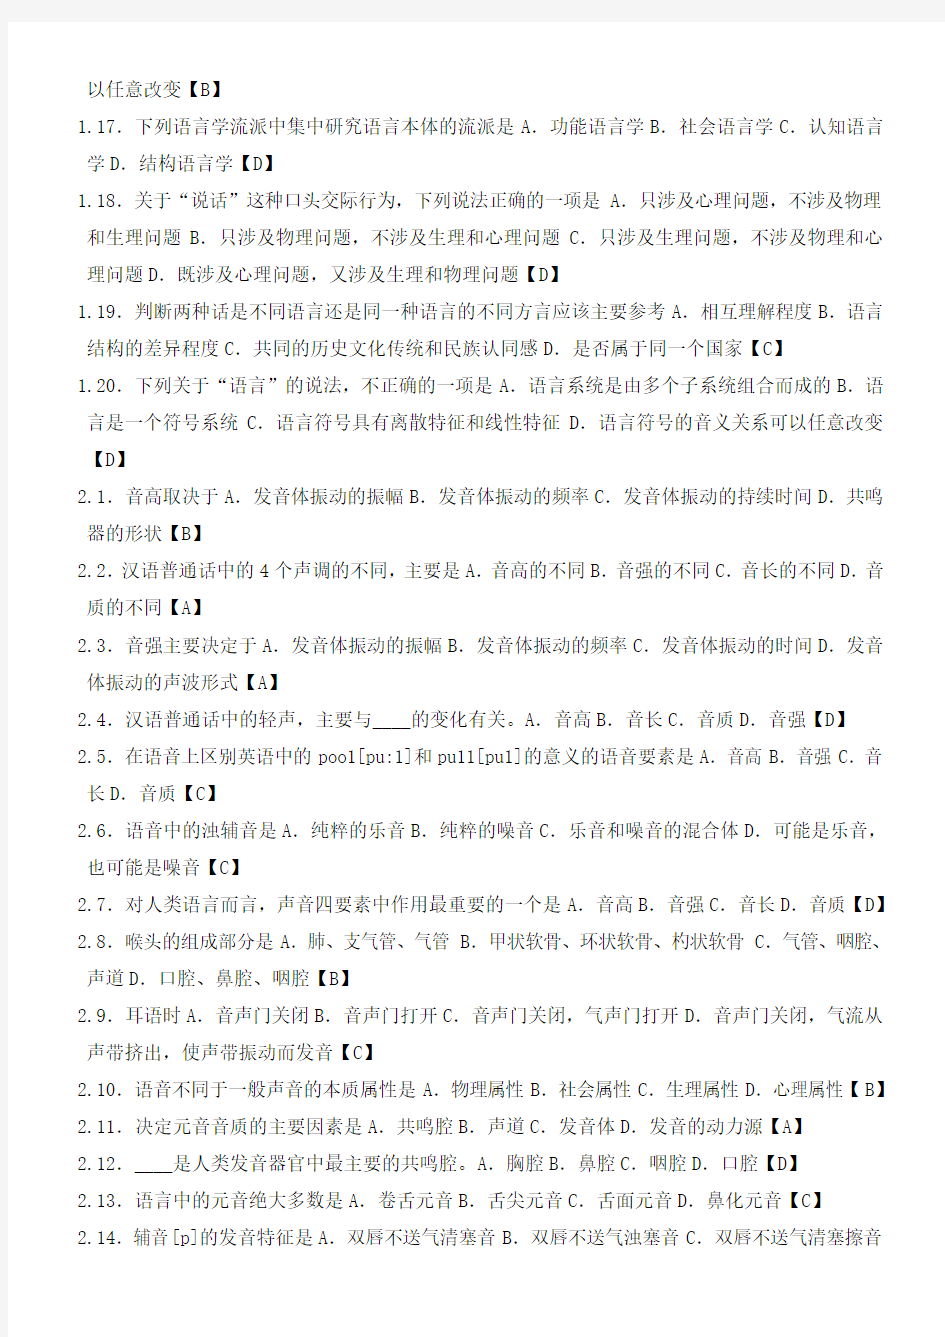 汉语言文学 00541语言学概论_完整复习资料包